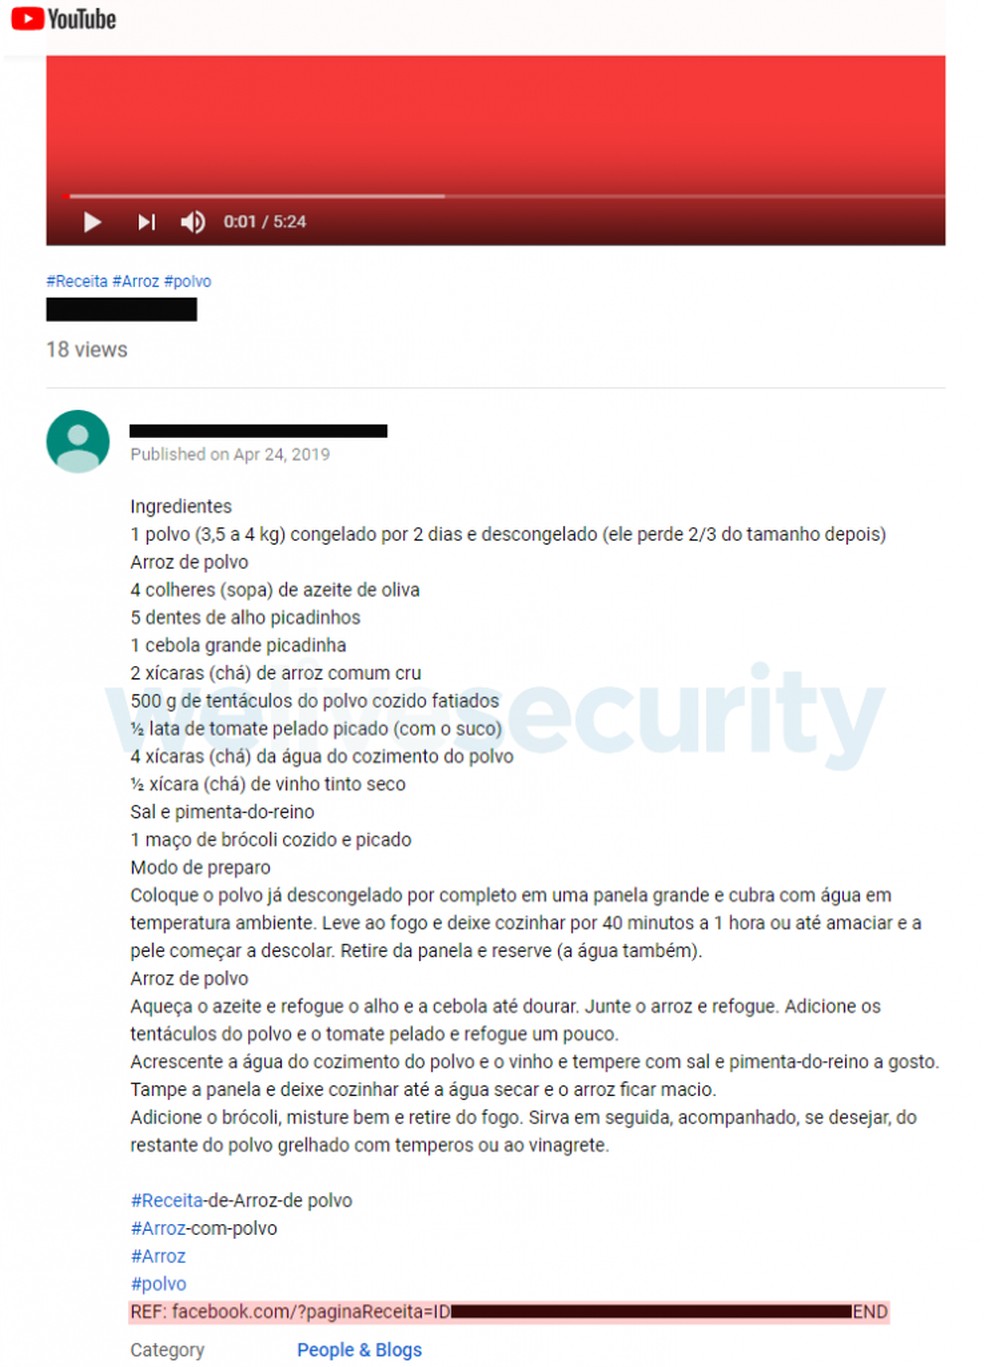 Malware Casbaneiro se esconde em links falsos do YouTube — Foto: Divulgação/ESET